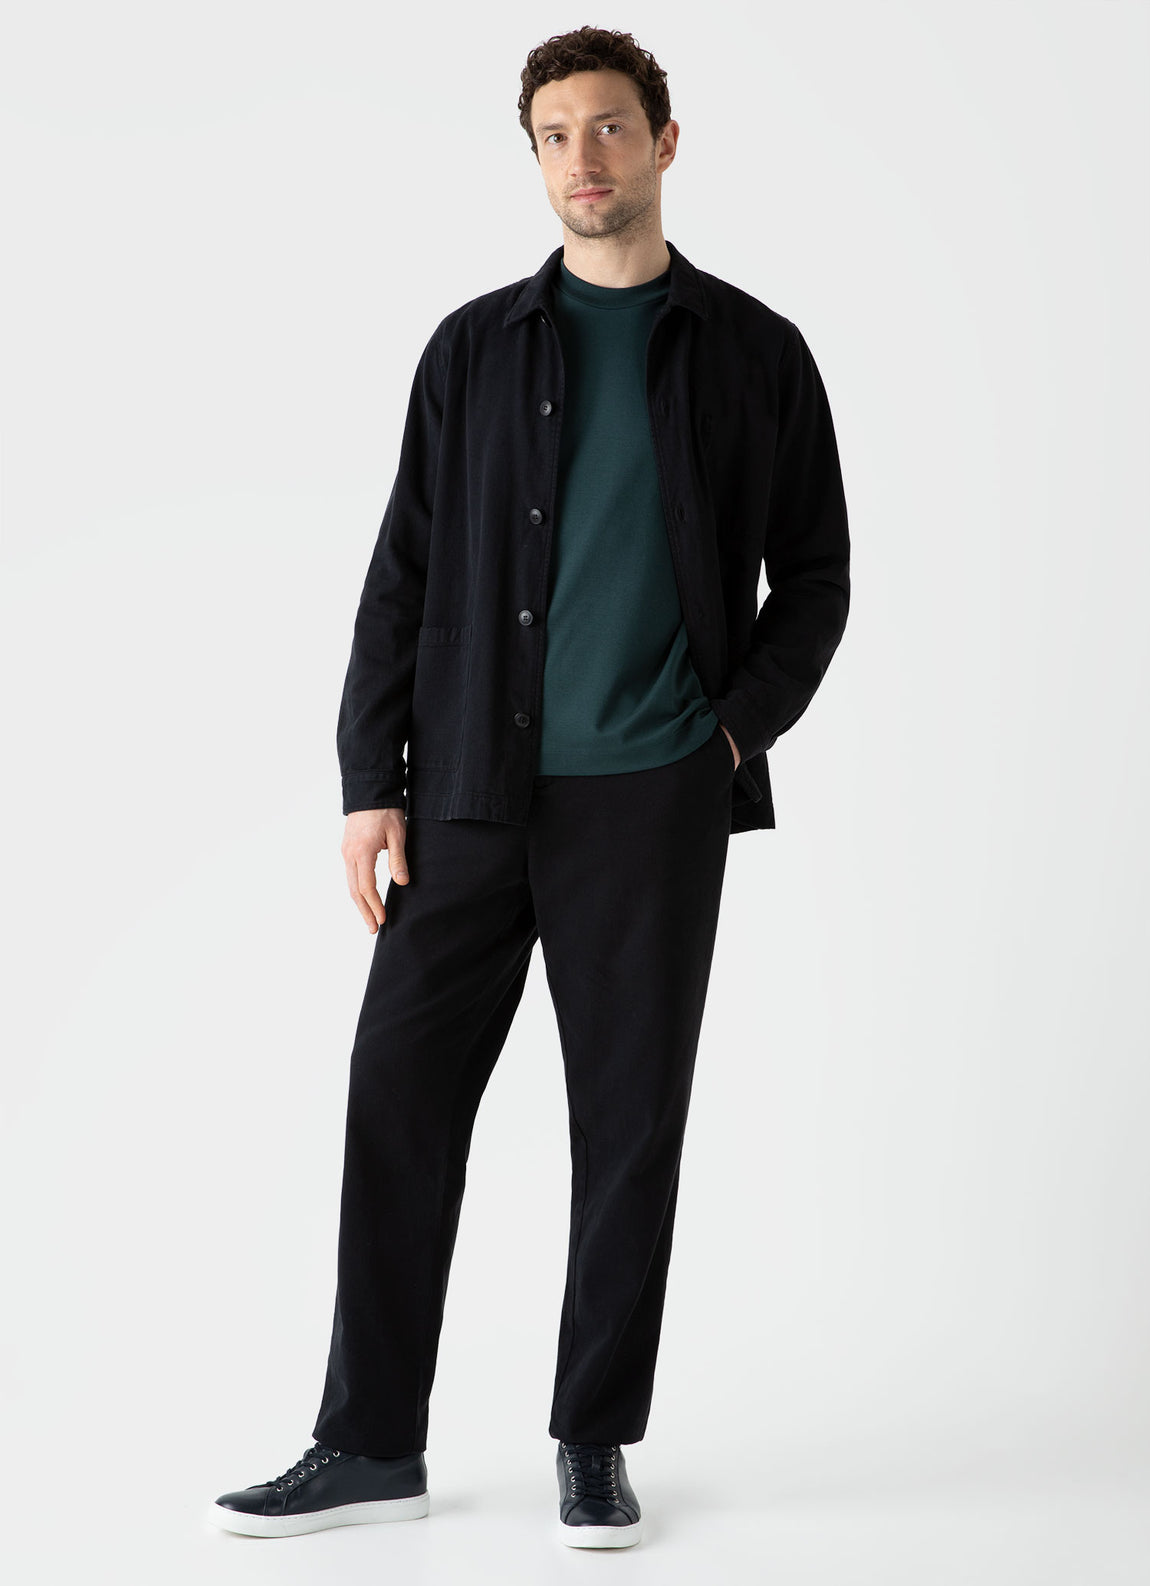 Men's Brushed Cotton Chore Trouser in Black | Sunspel